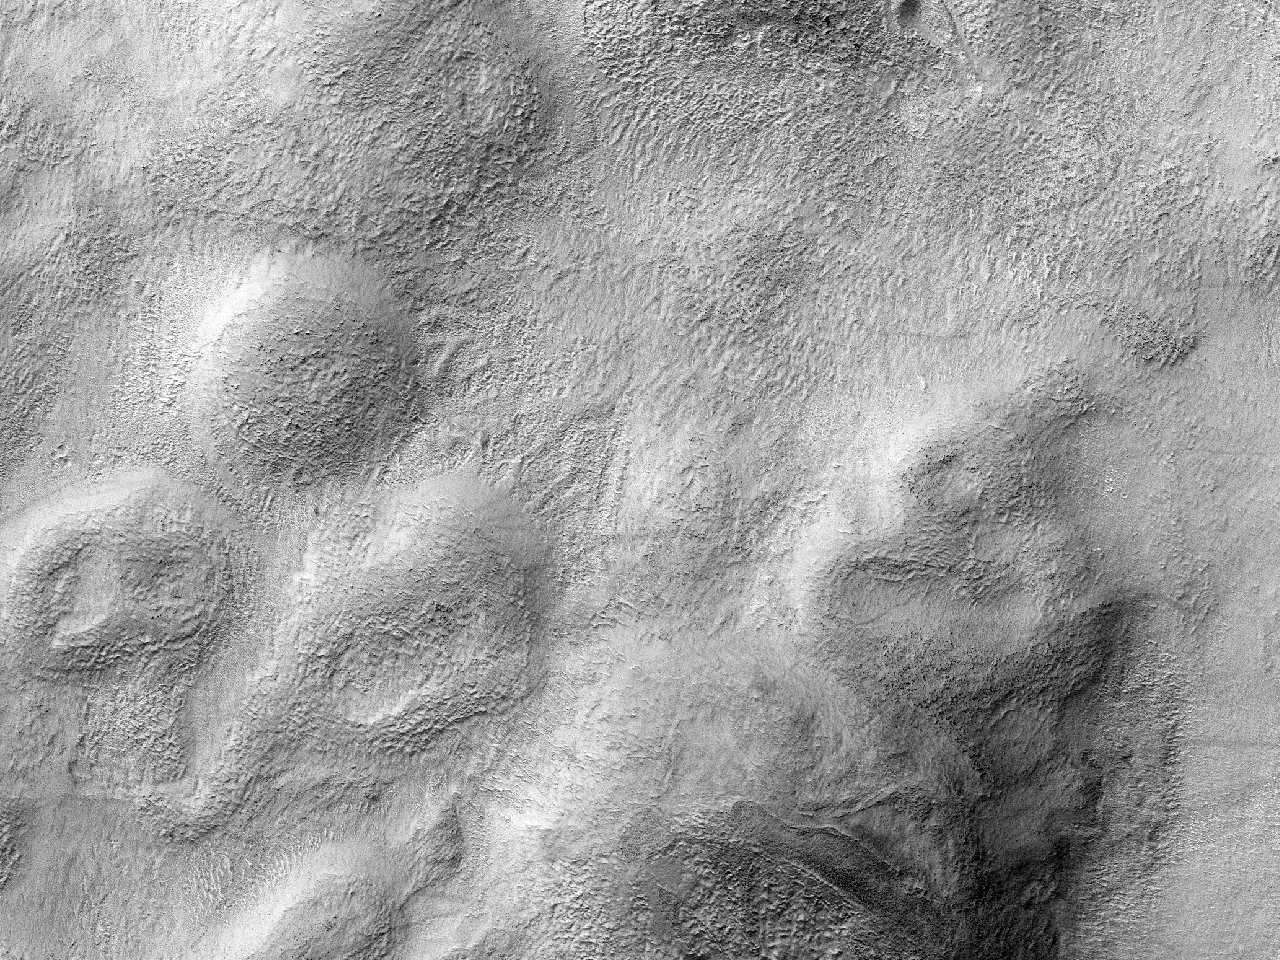 Eroziitaj teramasoj en Hellas Planitia